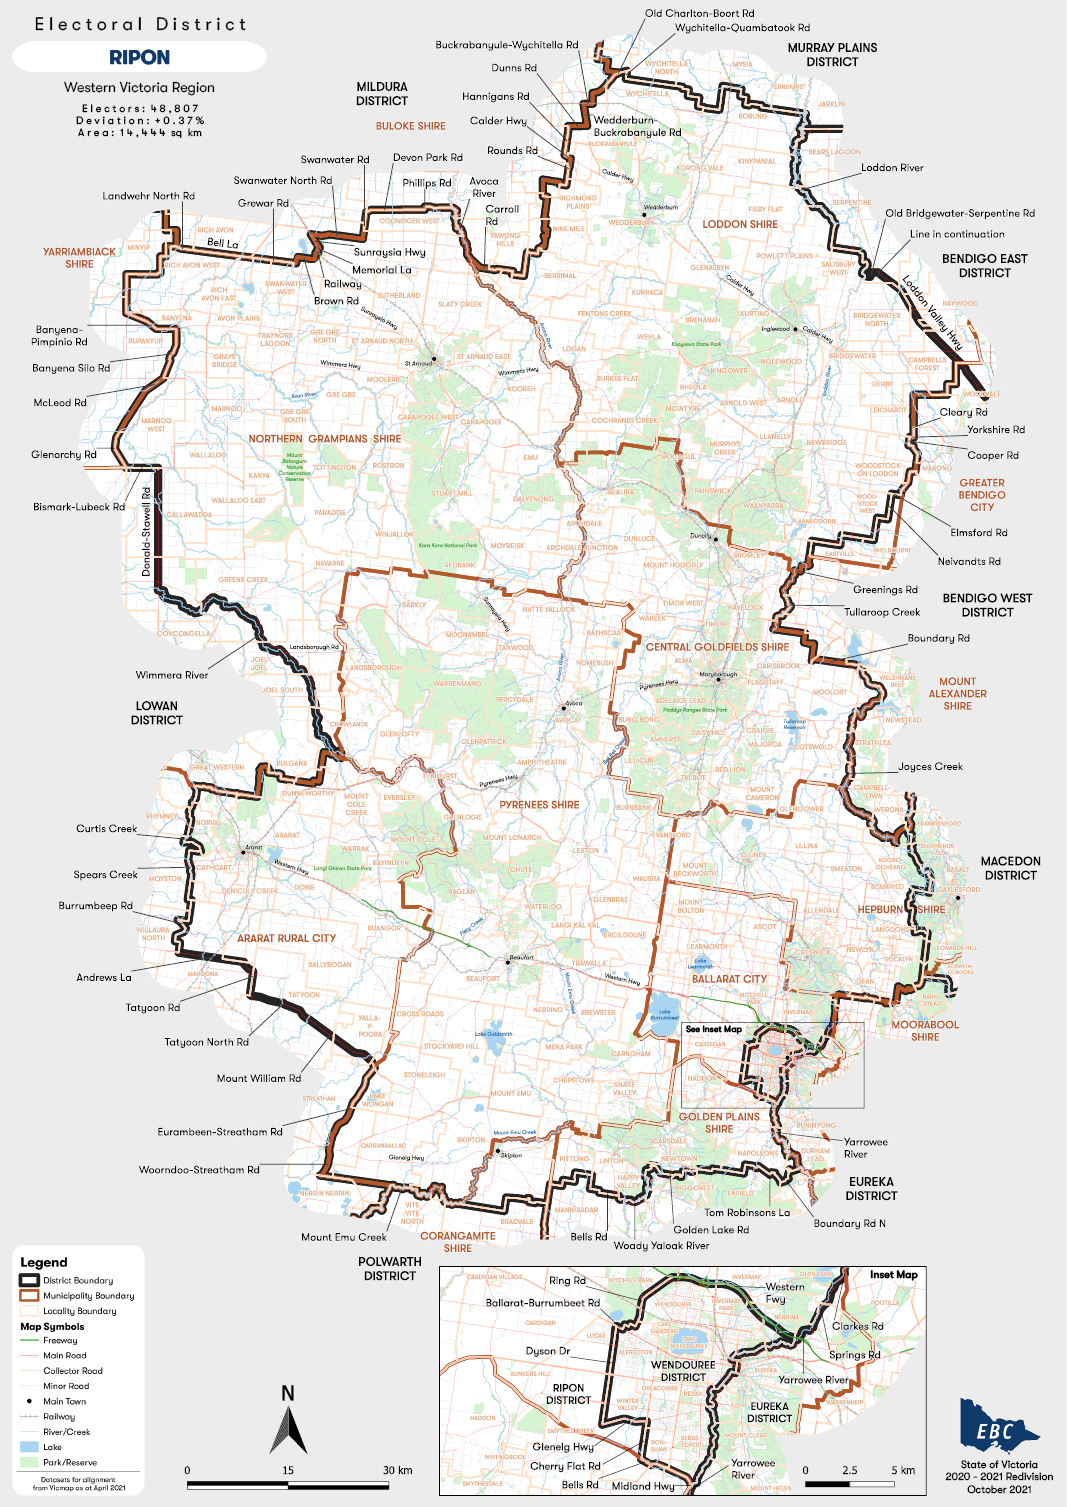 RIPON Electoral District